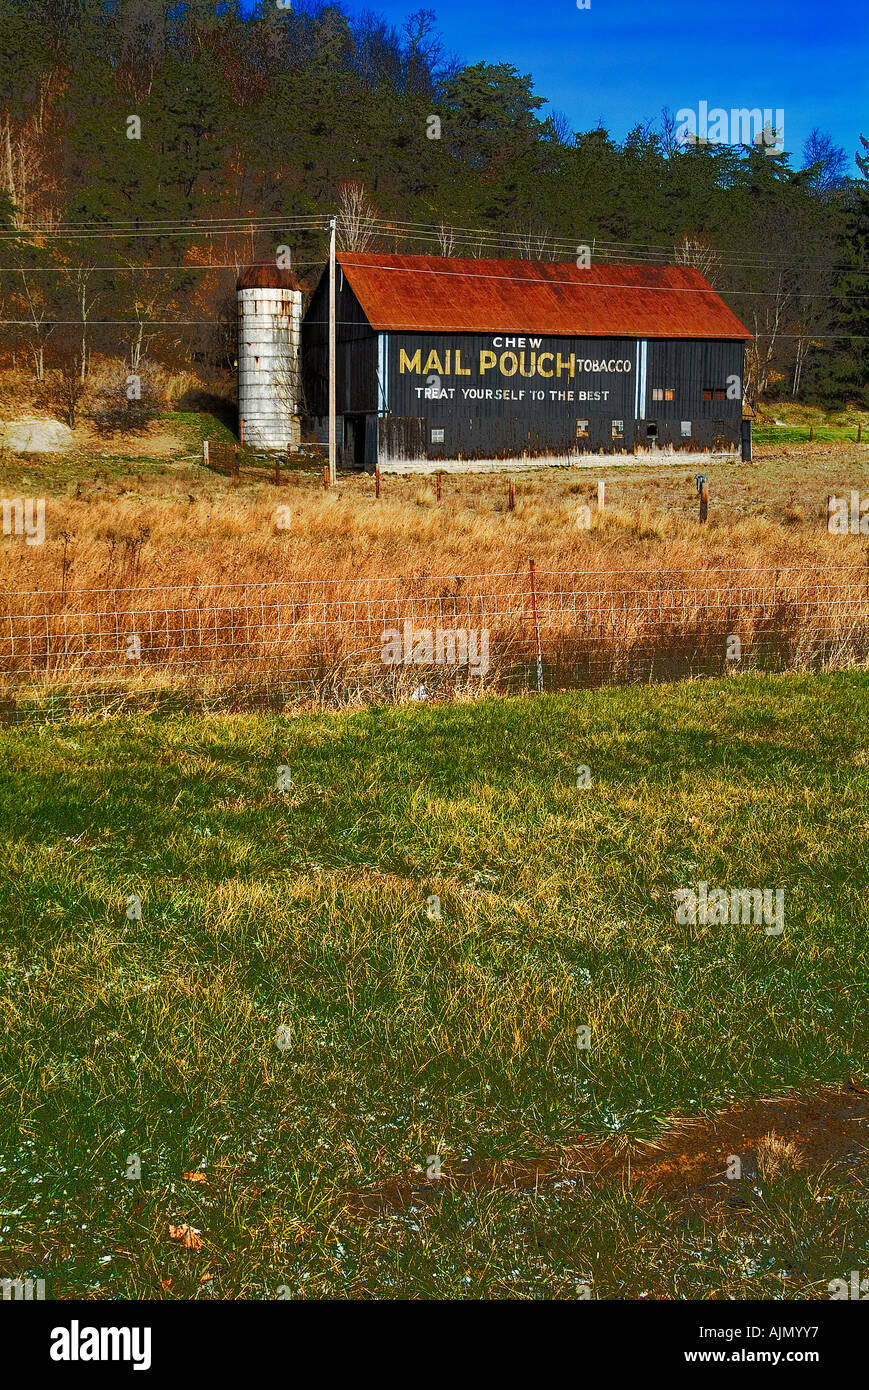 Pochette courrier annonce sur grange avec effets spéciaux numériques en milieu rural de la Pennsylvanie, USA Banque D'Images